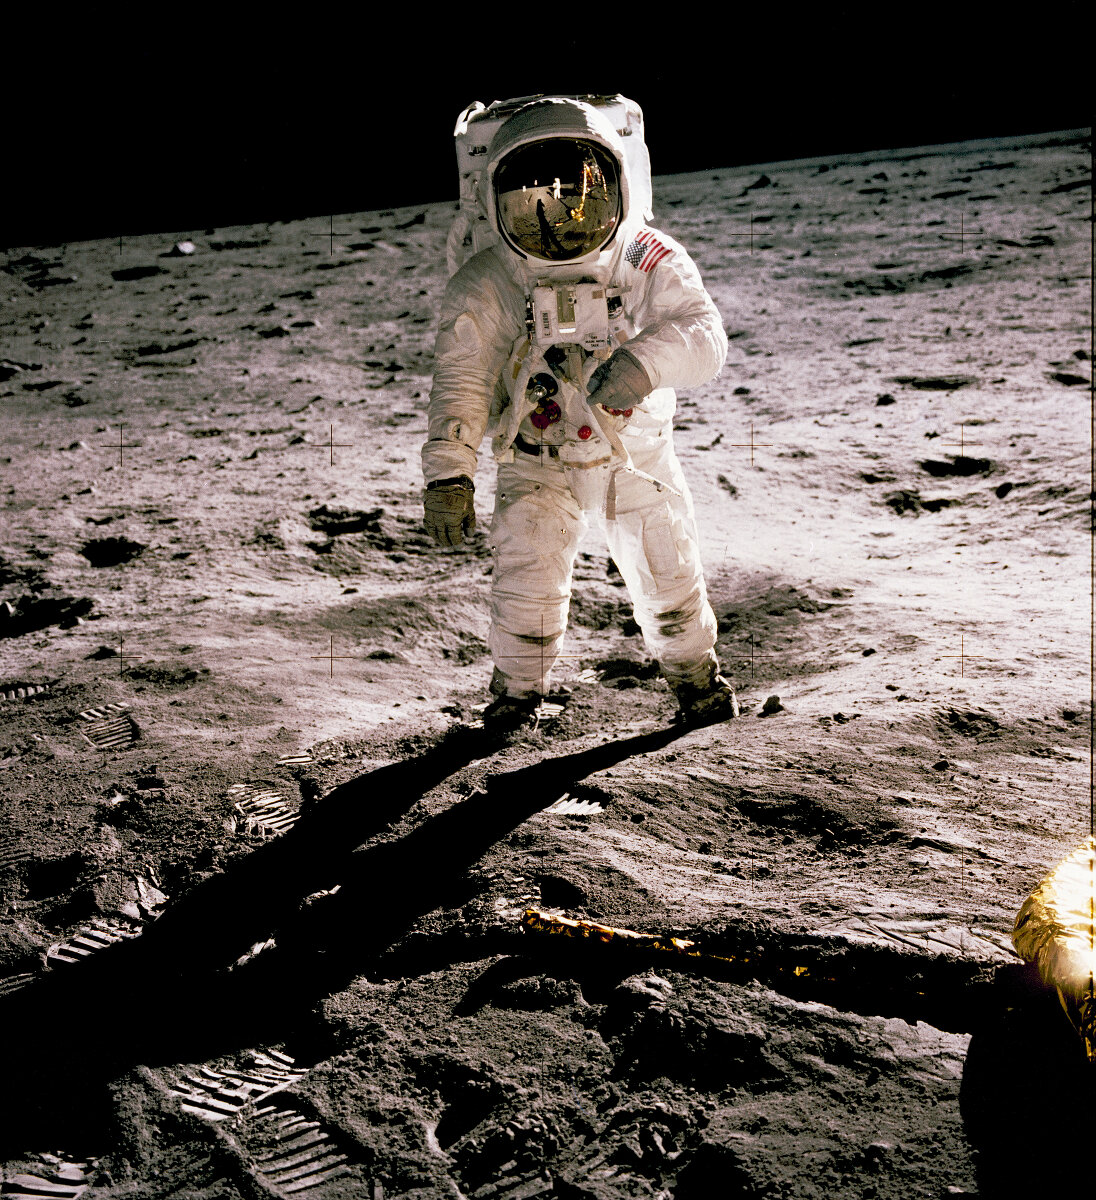 <p>Астронавты Нил Армстронг и Эдвин Олдрин-младший &nbsp;были в экипаже первого корабля, который приземлился на Луне. LM приземлился на поверхность Луны 20 июля 1969 года, в регионе, известном как Tranquilitatis Mare (Море Спокойствия). В это время астронавт Майкл Коллинз пилотировал командный модуль на орбите вокруг Луны. На этой фотографии Эдвин Олдрин ходит&nbsp;по лунной поверхности. Нила Армстронга, который сделал эту фотографию, можно увидеть в отражении на шлема Олдрина. Армстронг был первым человеком когда-либо стоявшим на лунной поверхности. Спустившись с корабля, Армстронг заявил: &laquo;Это один маленький шаг&nbsp;для&nbsp;человека&nbsp;и огромный скачок для&nbsp;человечества&raquo;.</p>